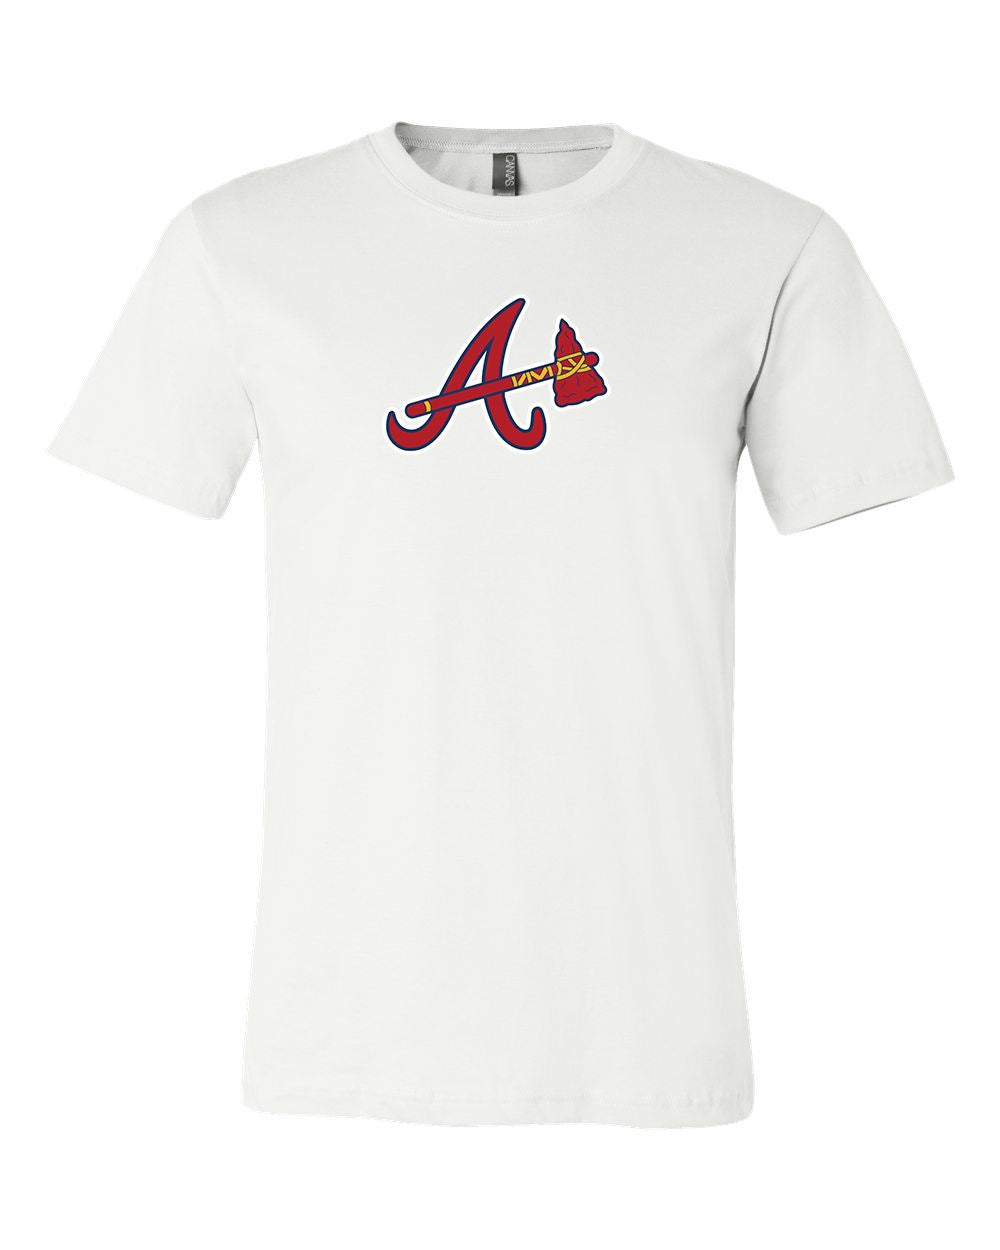 Atlanta Braves Shirt, Braves Shirt, Cute Braves Shirt, MLB Shirt